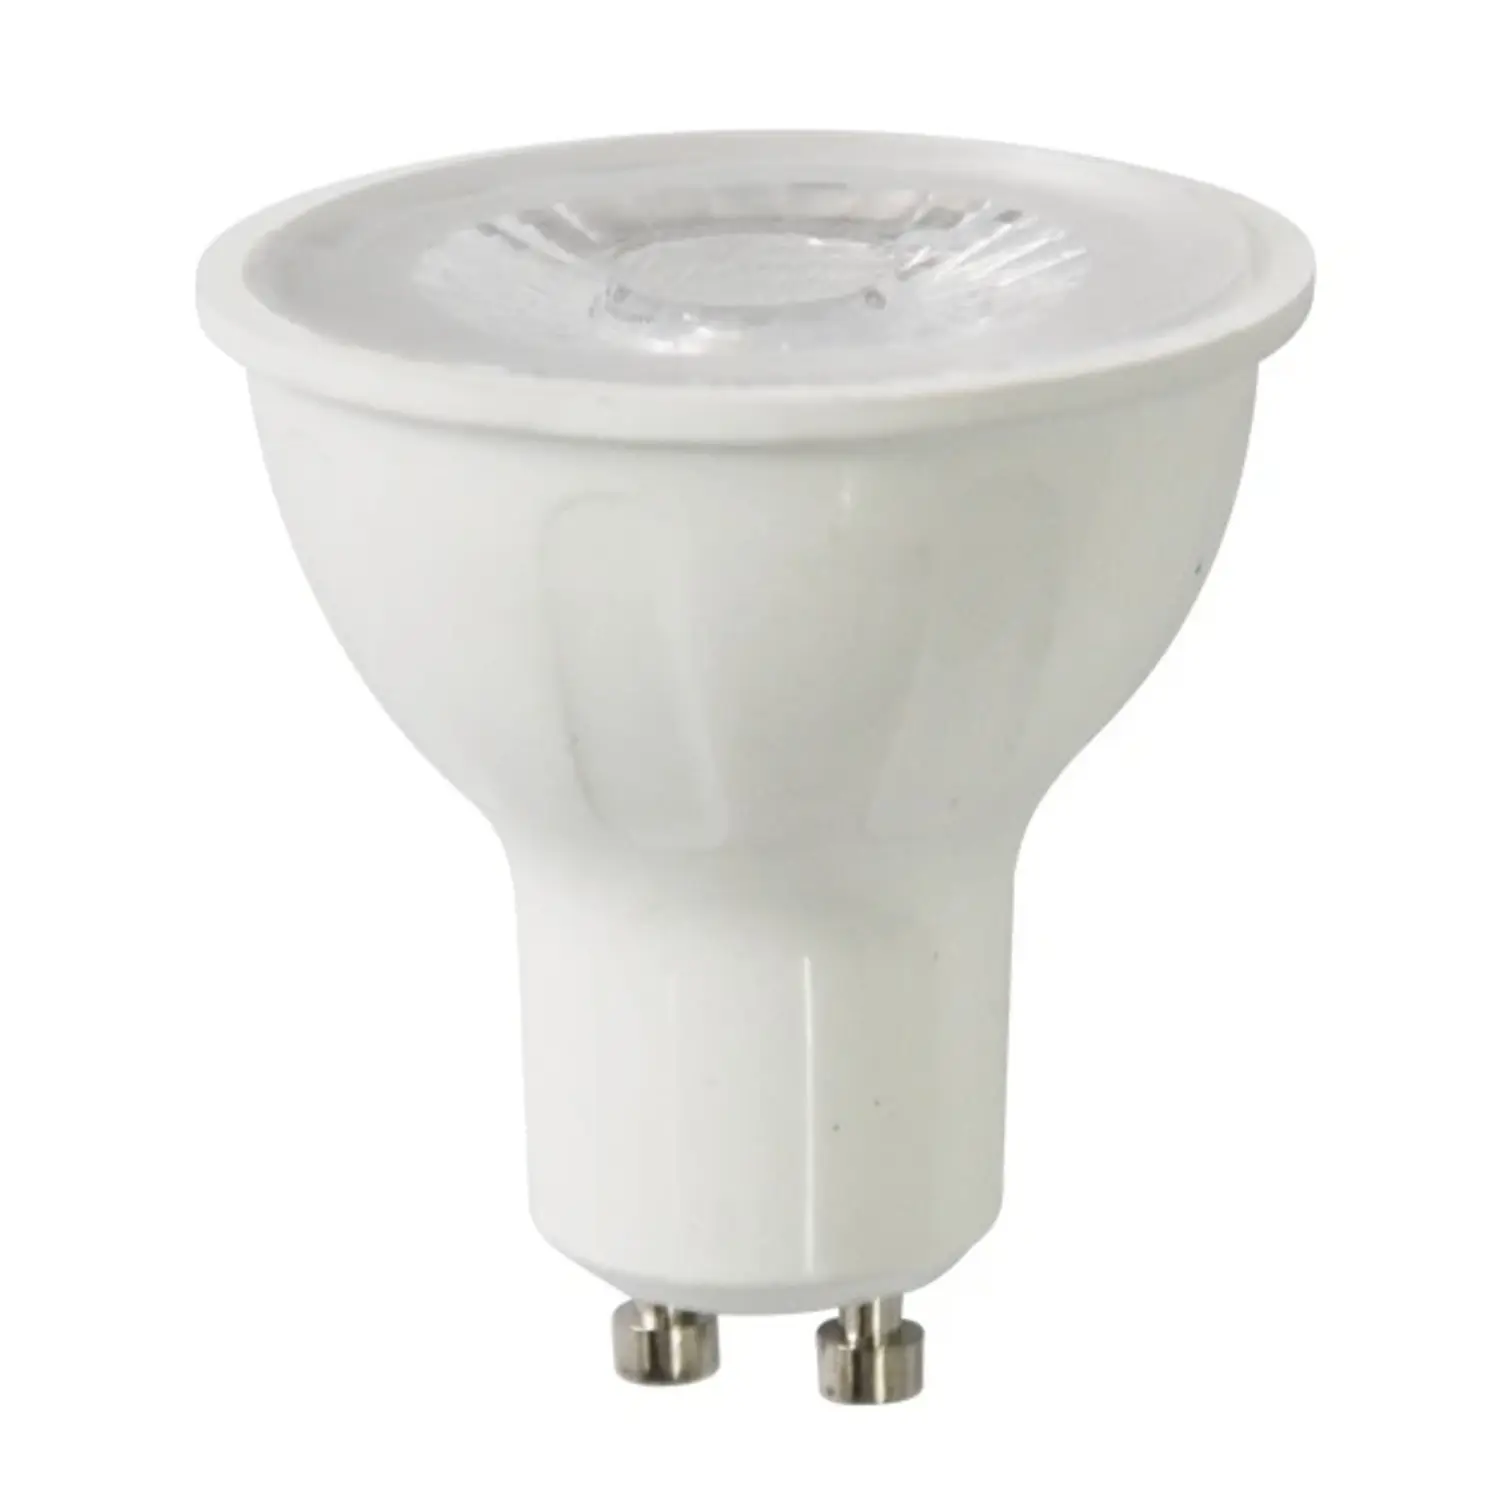 immagine del prodotto lampadina led spot porta faretto angolo stretto 38° cob gu10 6 watt bianco caldo